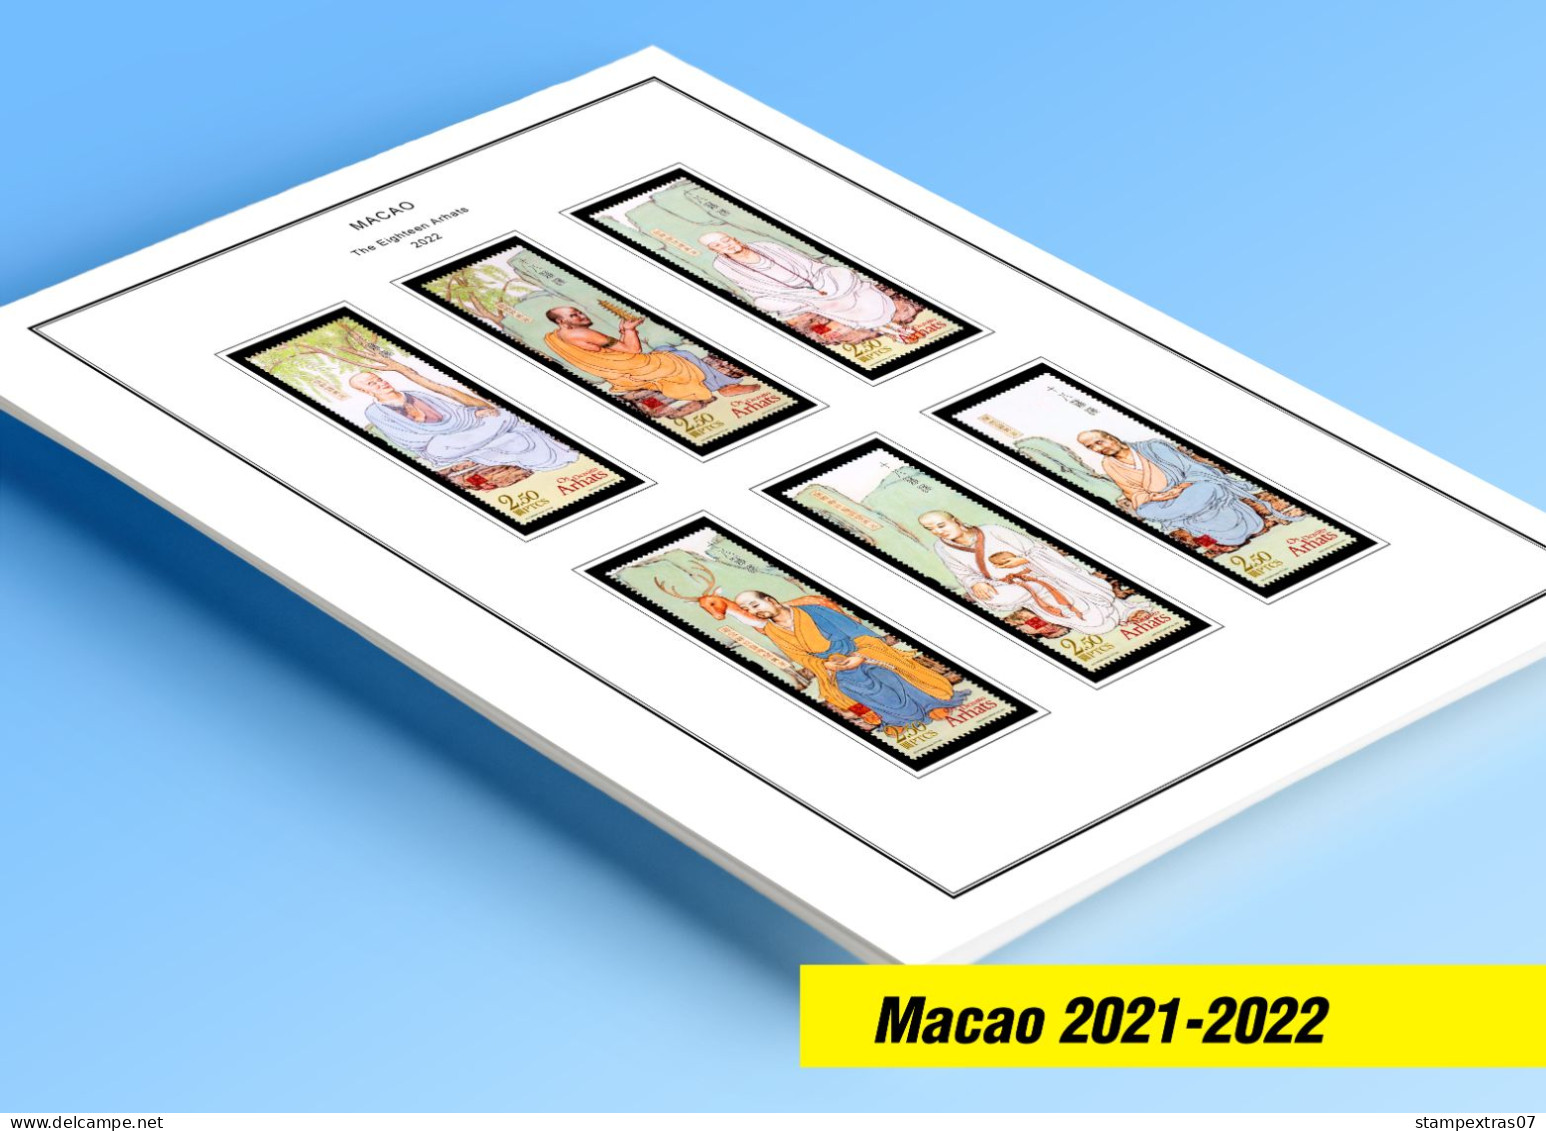 COLOR PRINTED MACAO [SAR] 2021-2022 STAMP ALBUM PAGES (33 Illustrated Pages) >> FEUILLES ALBUM - Pré-Imprimés